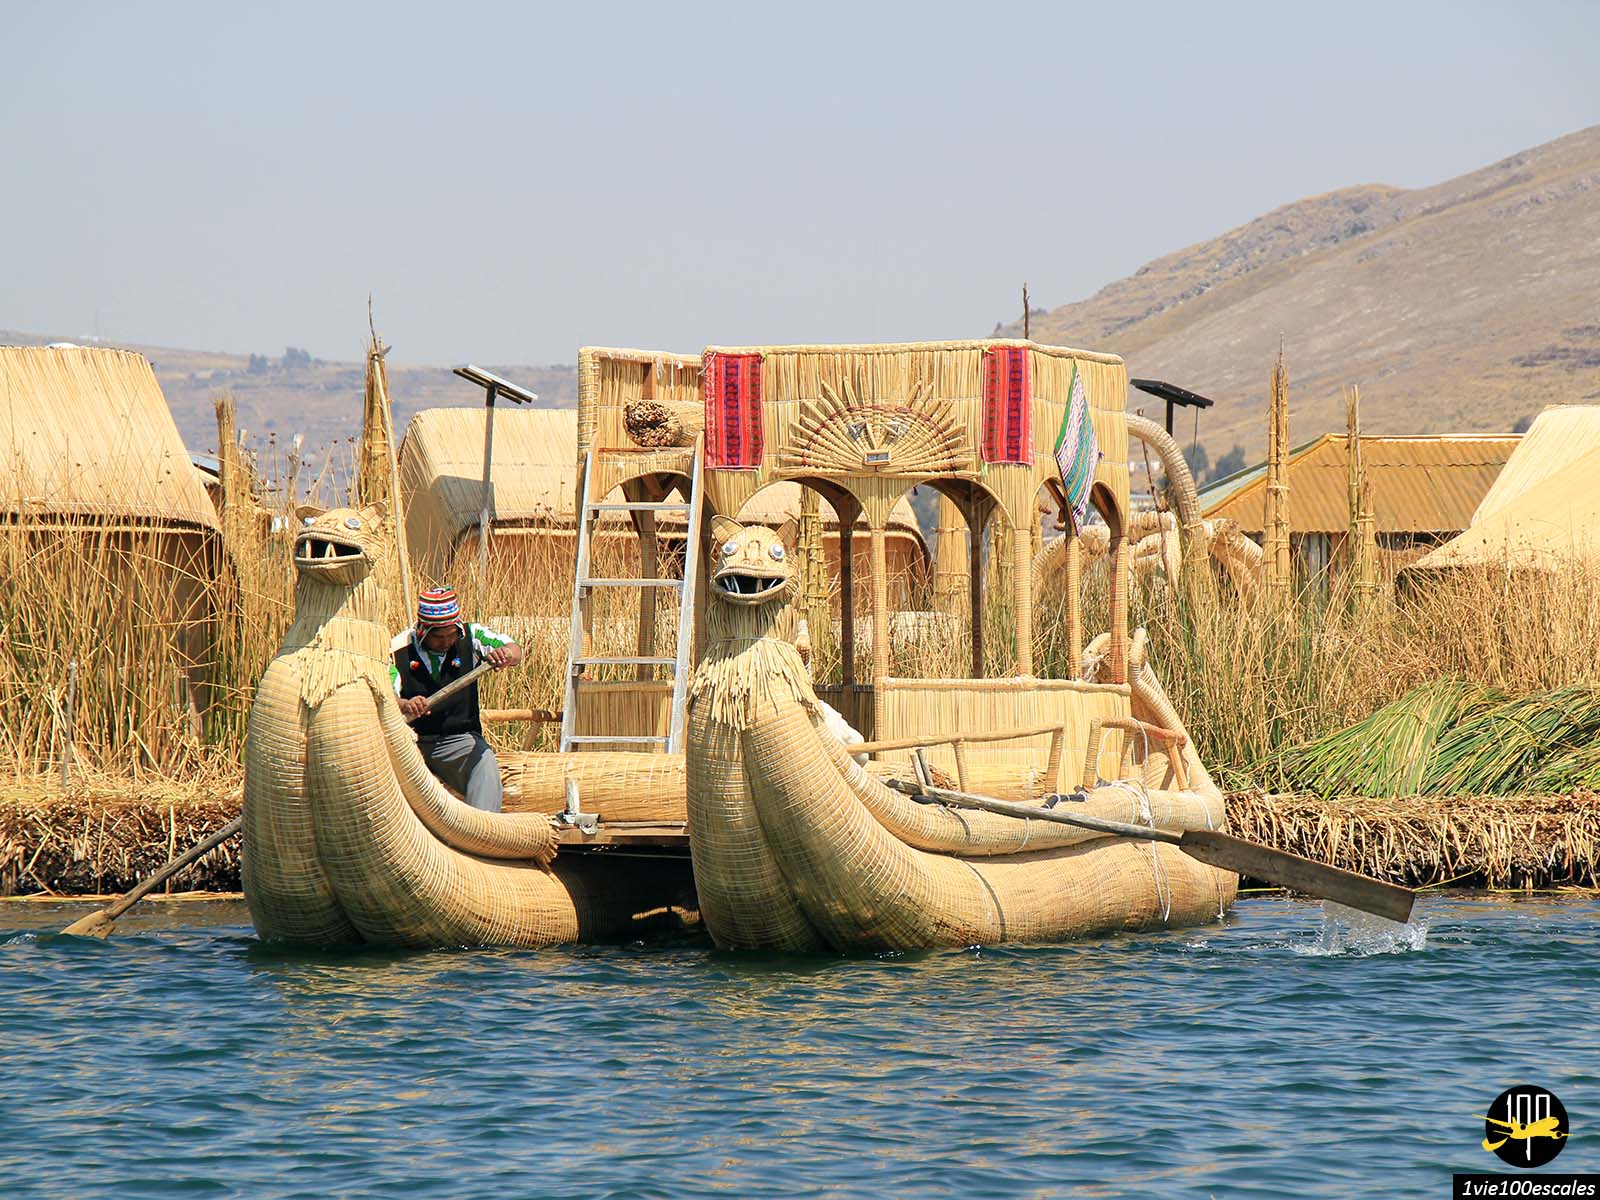 Les beaux bateaux en roseaux qui permettent de naviguer sur le lac Titicaca au Pérou